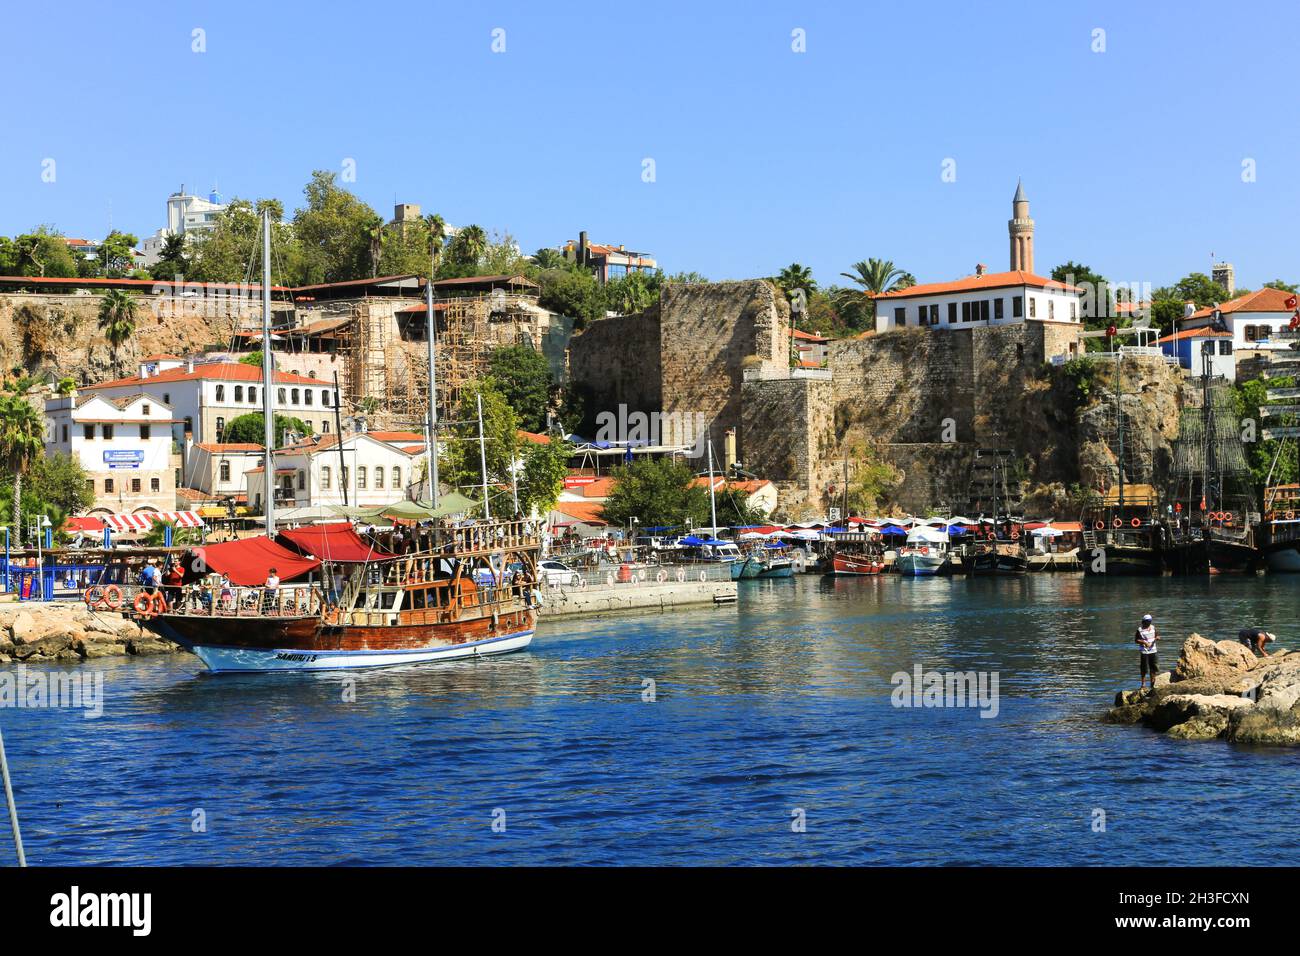 La barca turistica Samurei 5 sta lasciando il pittoresco porto turistico della città costiera di Antalya nel sud della Turchia. Foto Stock